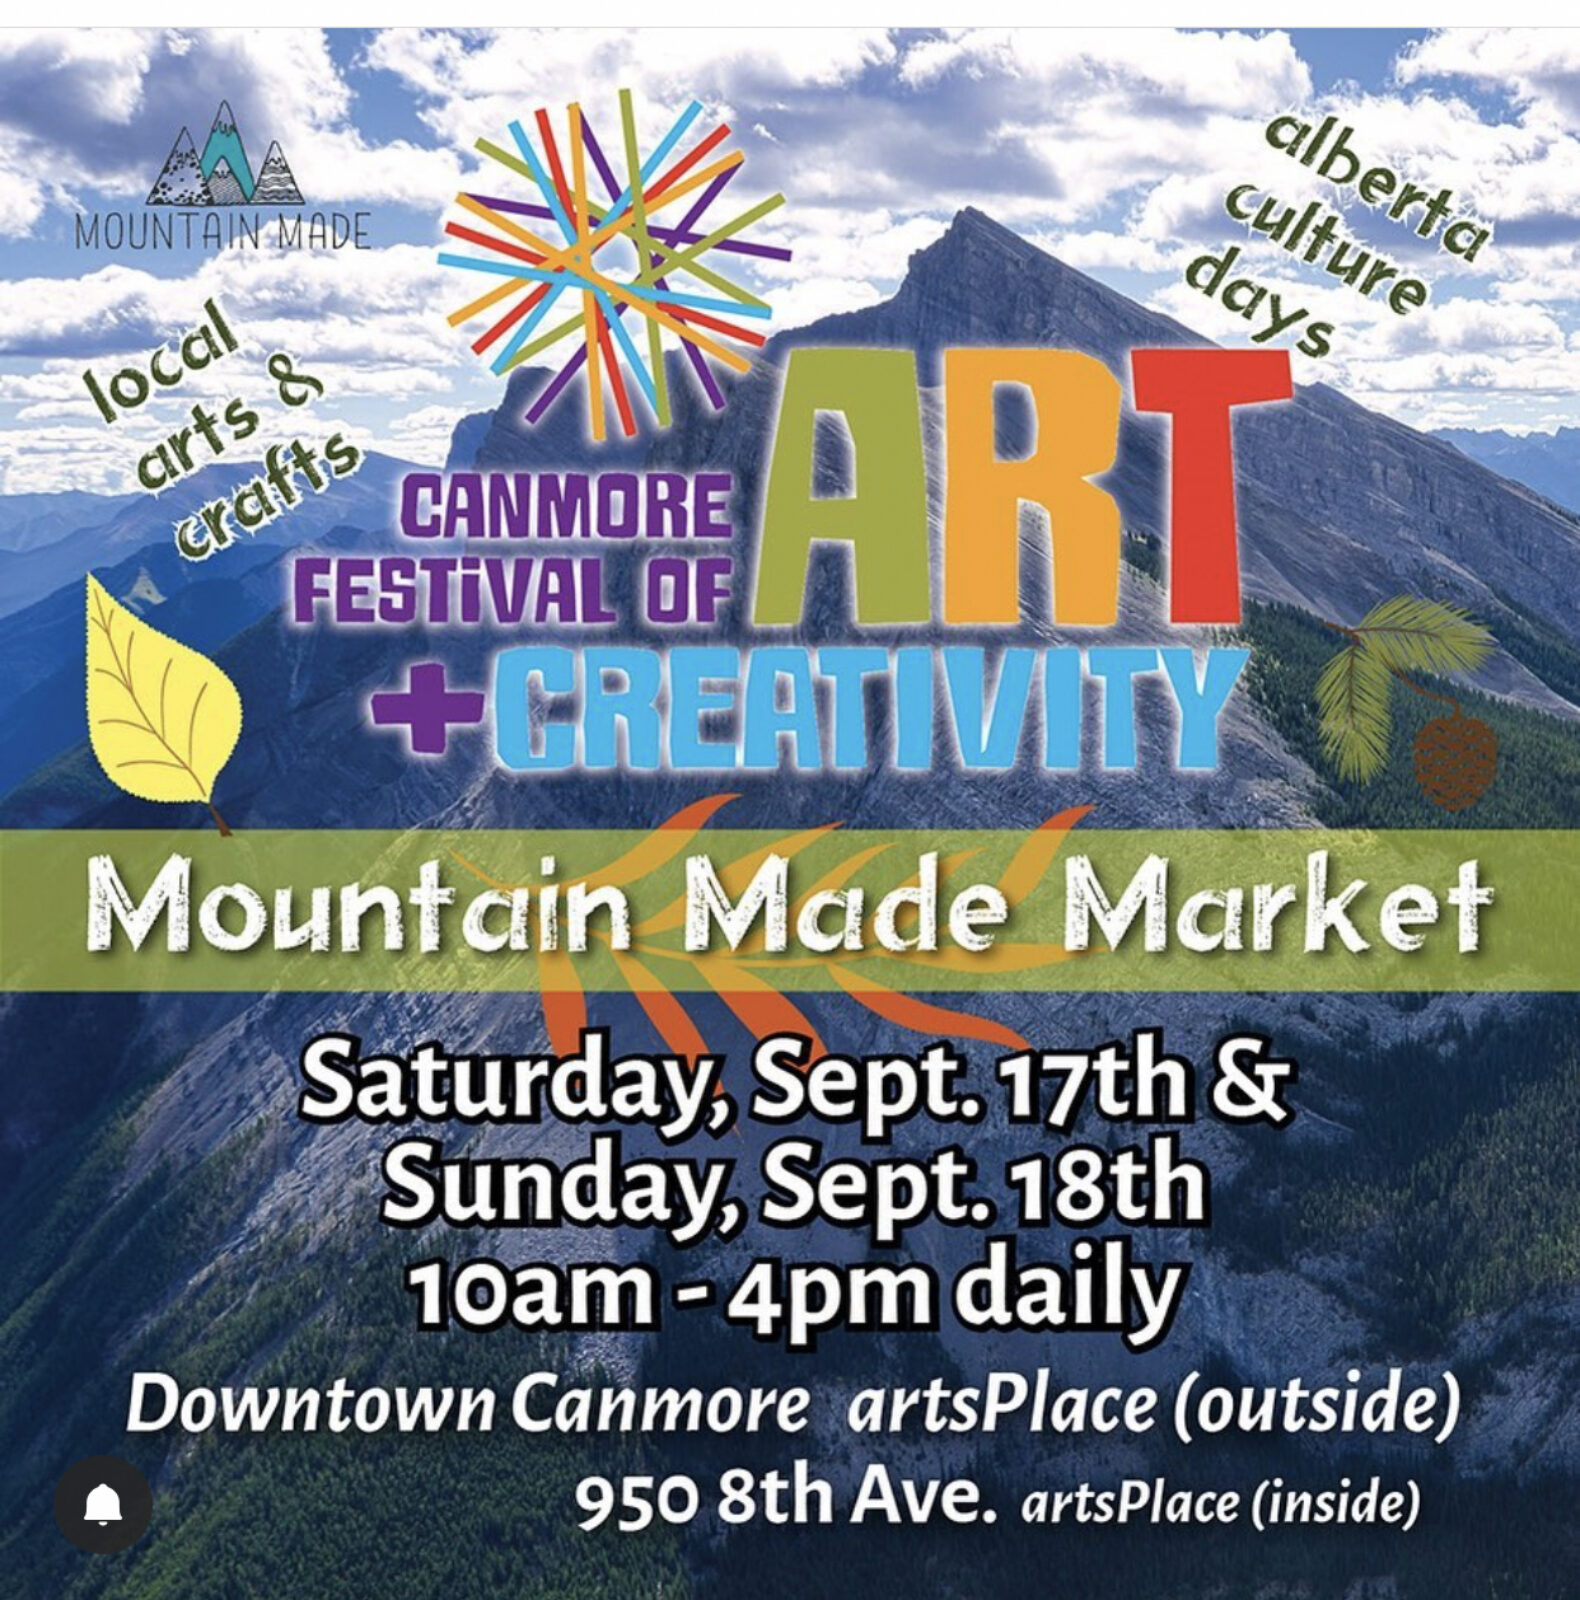 Canmore Festival of Art + Creativity September 17, 2022